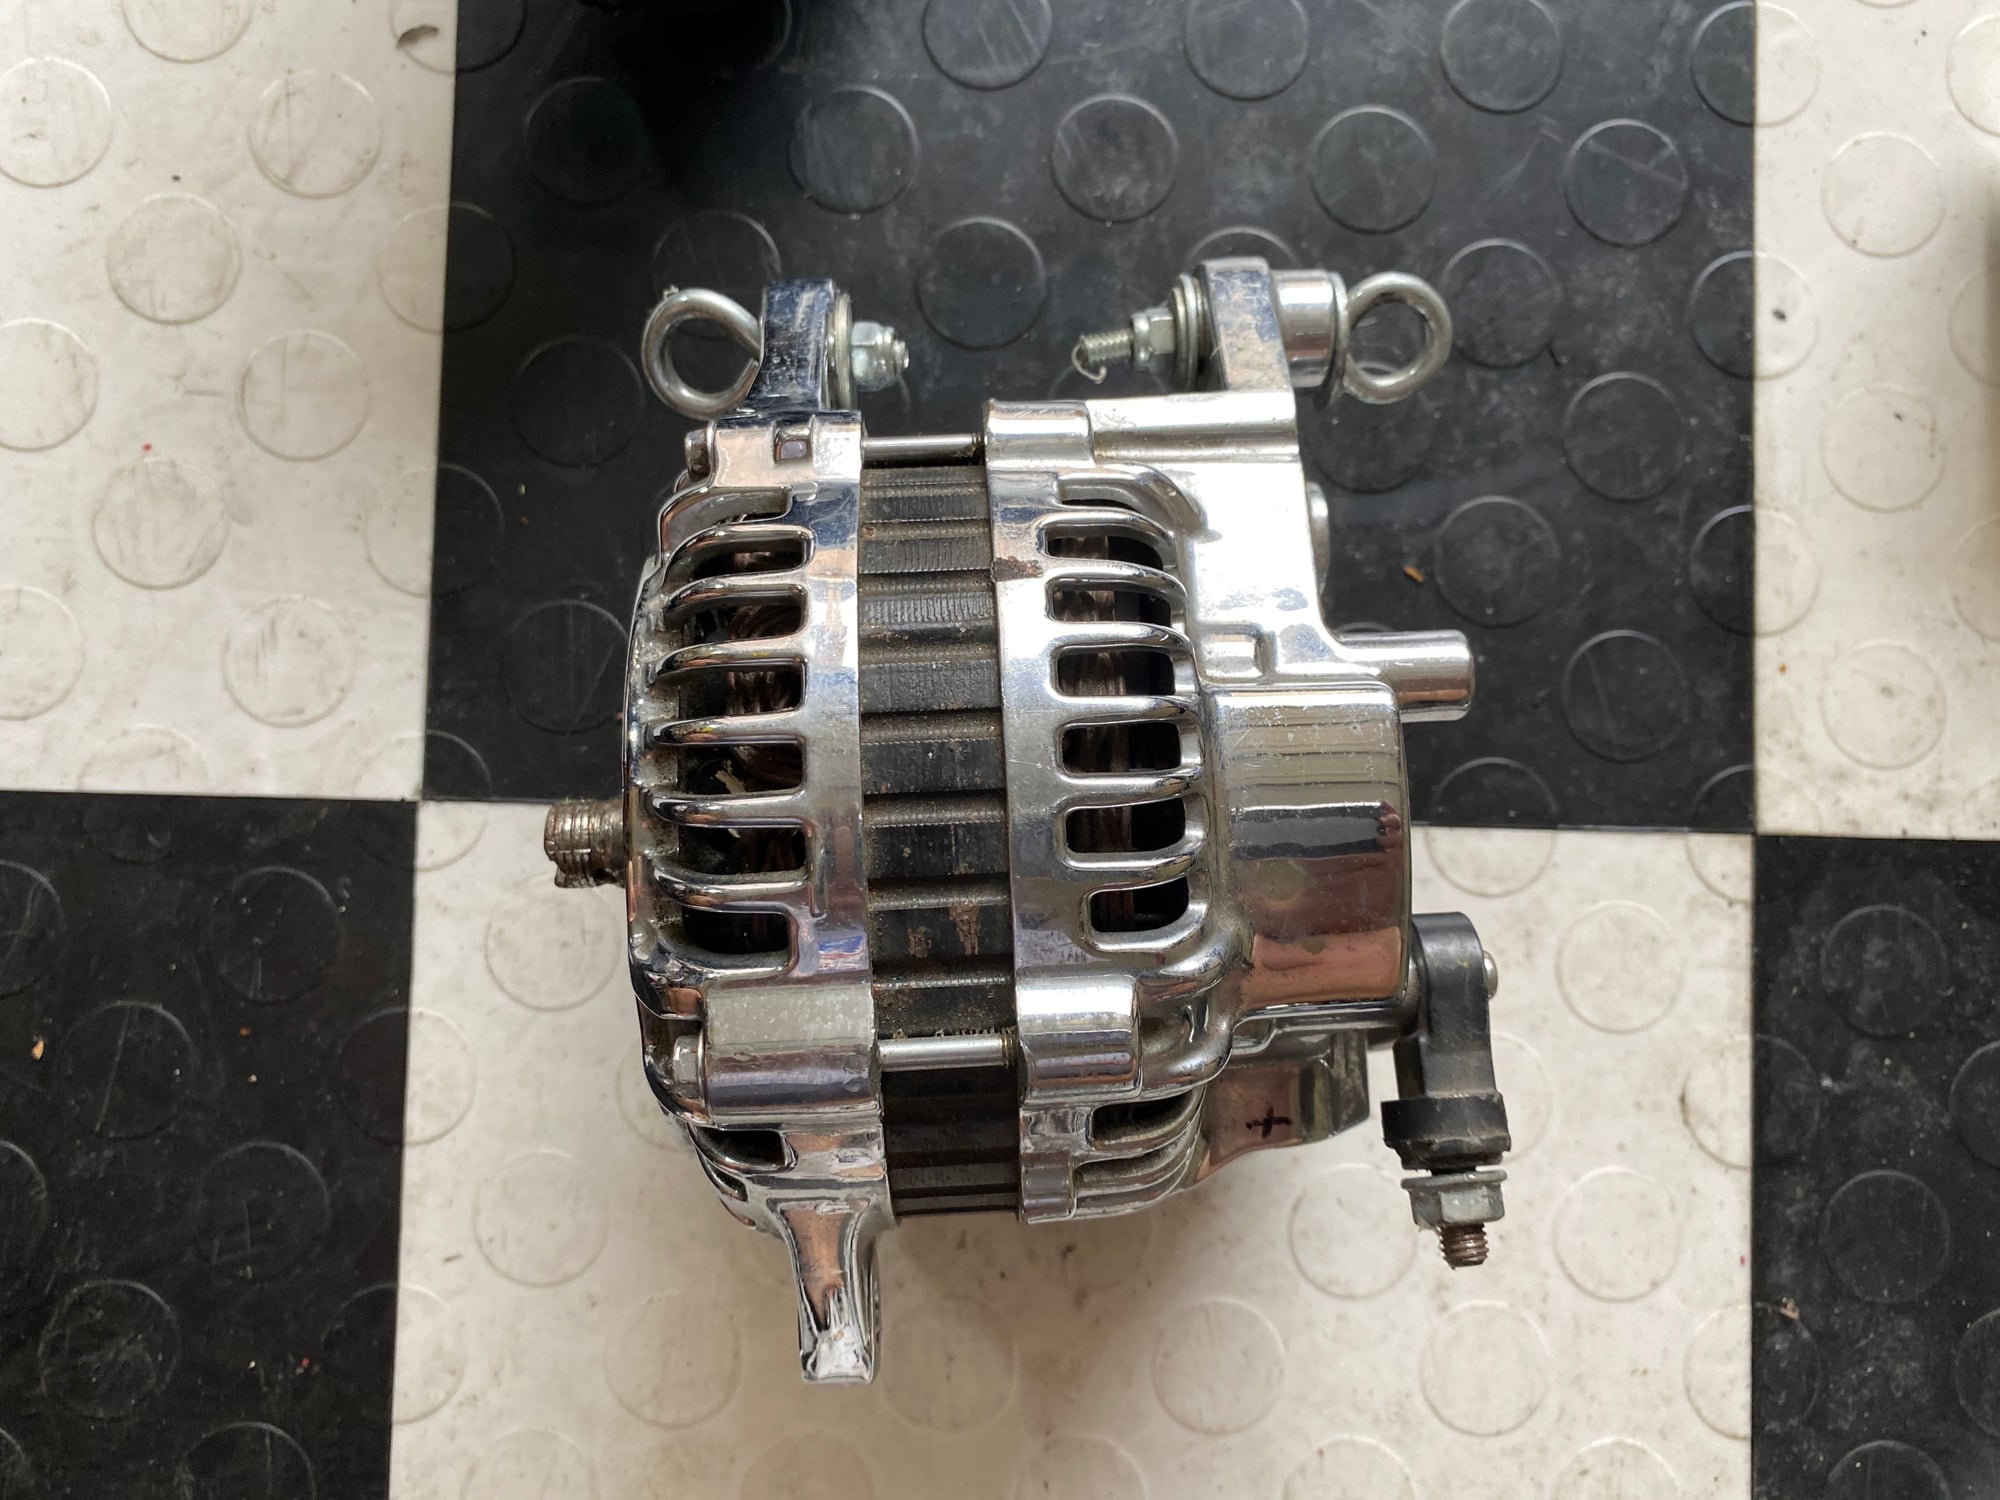 Engine - Electrical - Chromed Alternator - Used - 1993 to 1995 Mazda RX-7 - Lantana, TX 76226, United States